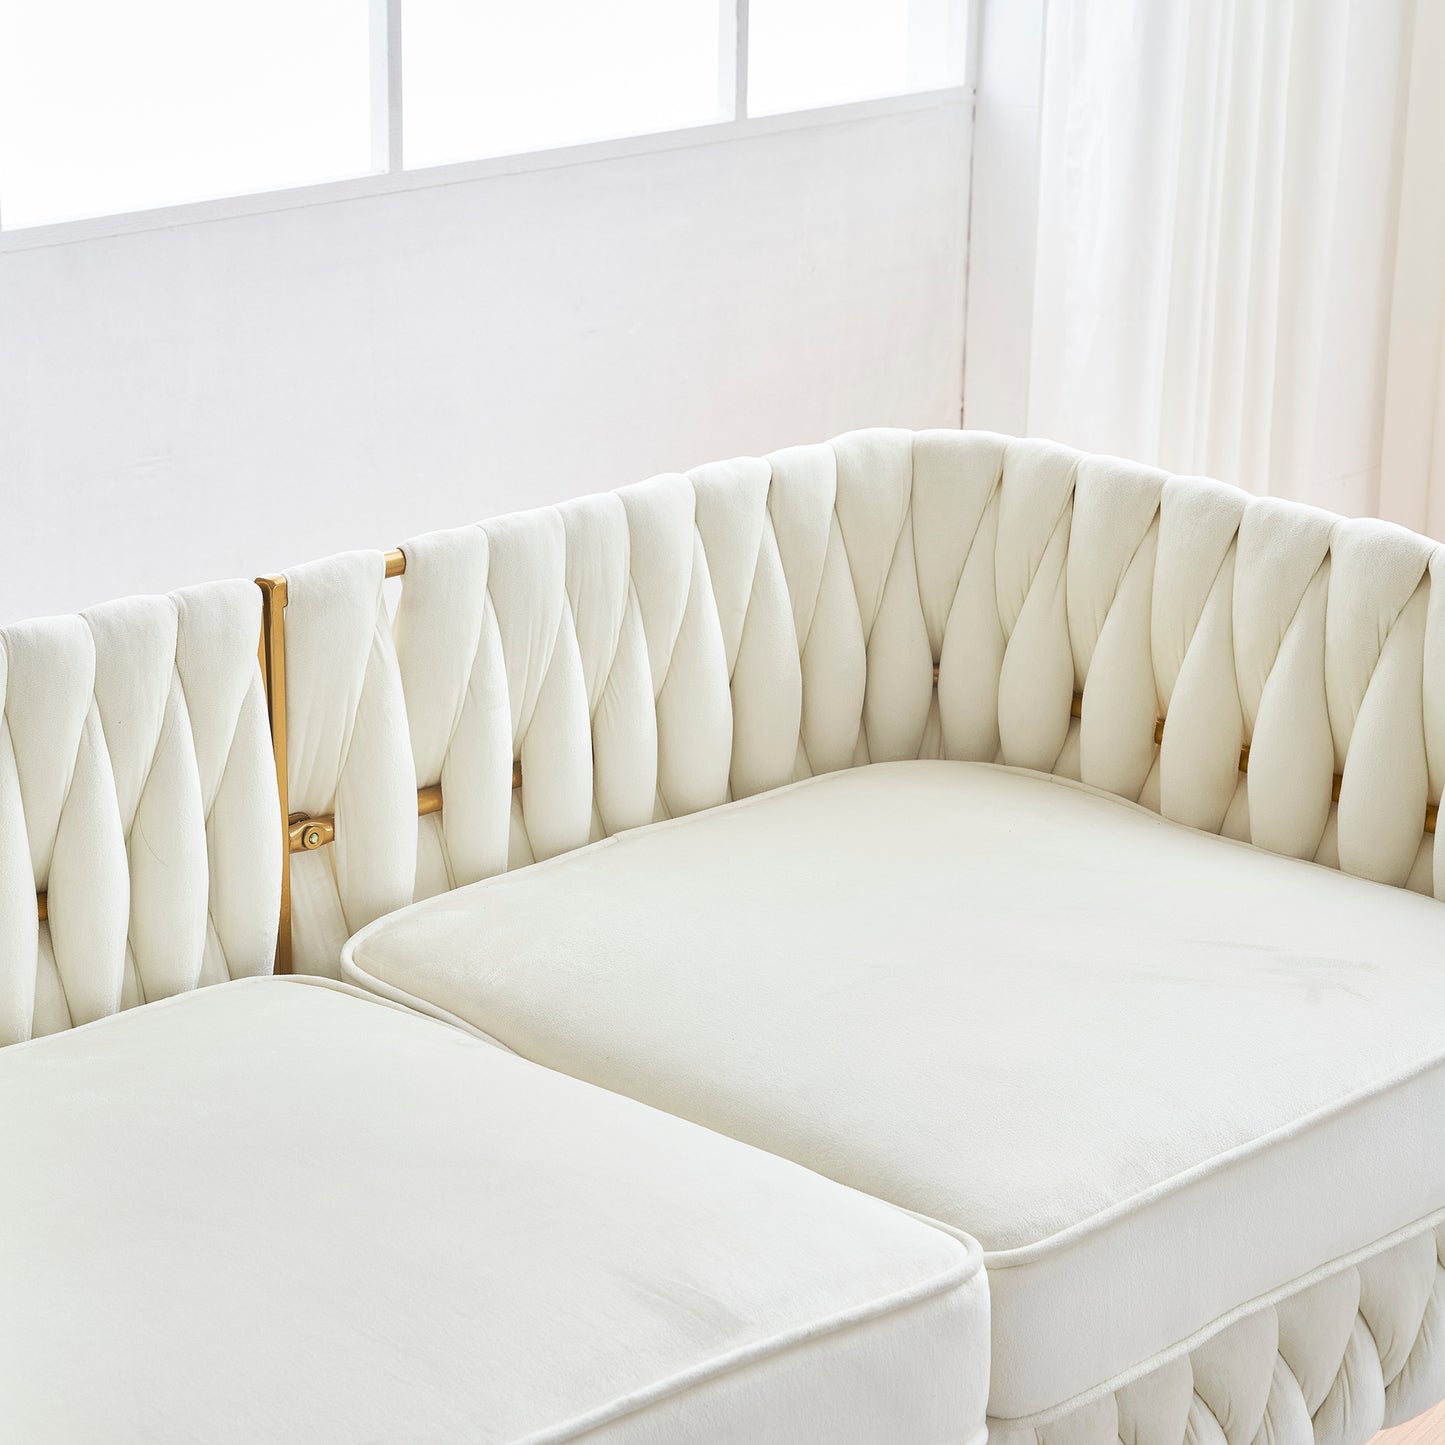 3 Piece Modern Velvet Upholstered Living Room Set with 3-Seater Sofa and 2 Loveseats, Handmade Woven Tufted Back and Arms, Golden Metal Legs,Cream White Velvet